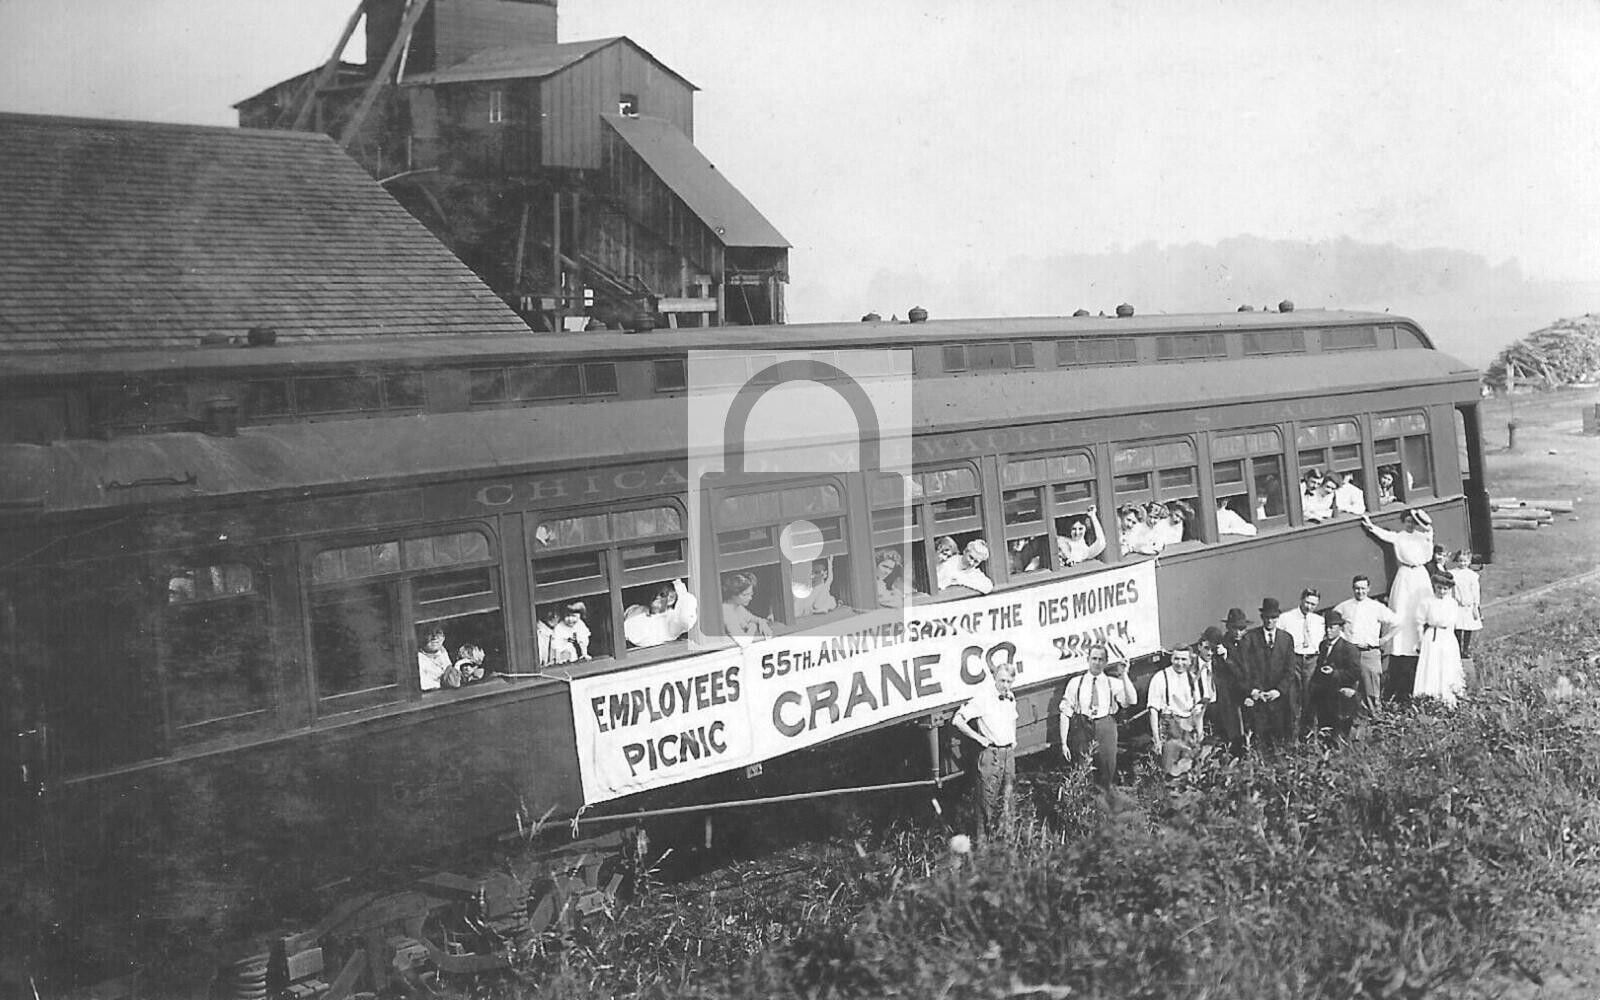 Railroad Train Crane Co Picnic Des Moines Iowa IA Branch Reprint Postcard